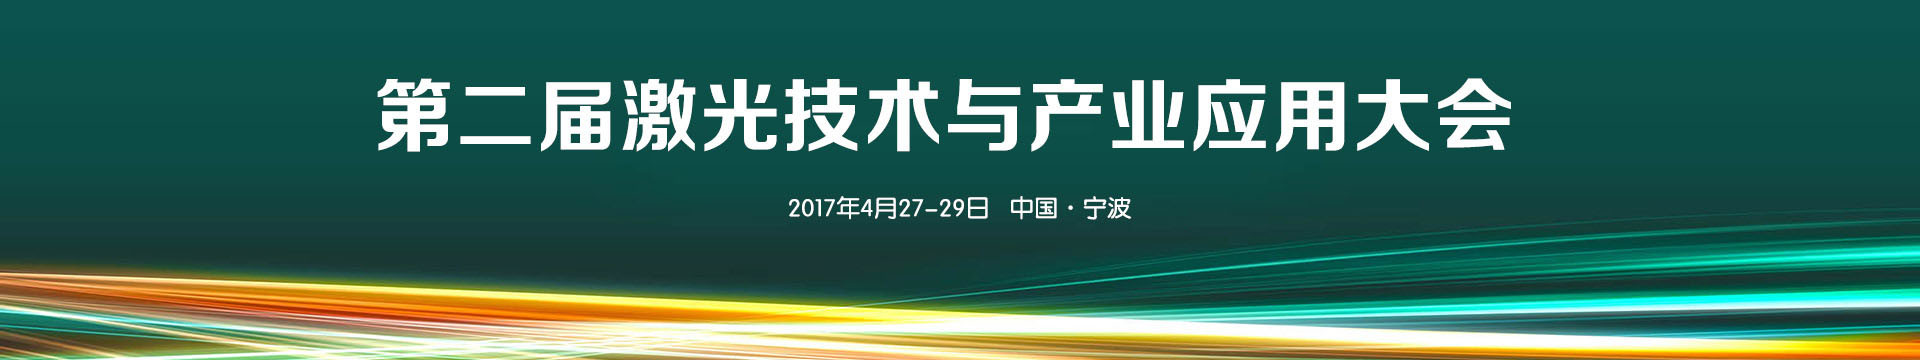 2017第二届激光技术与产业应用大会